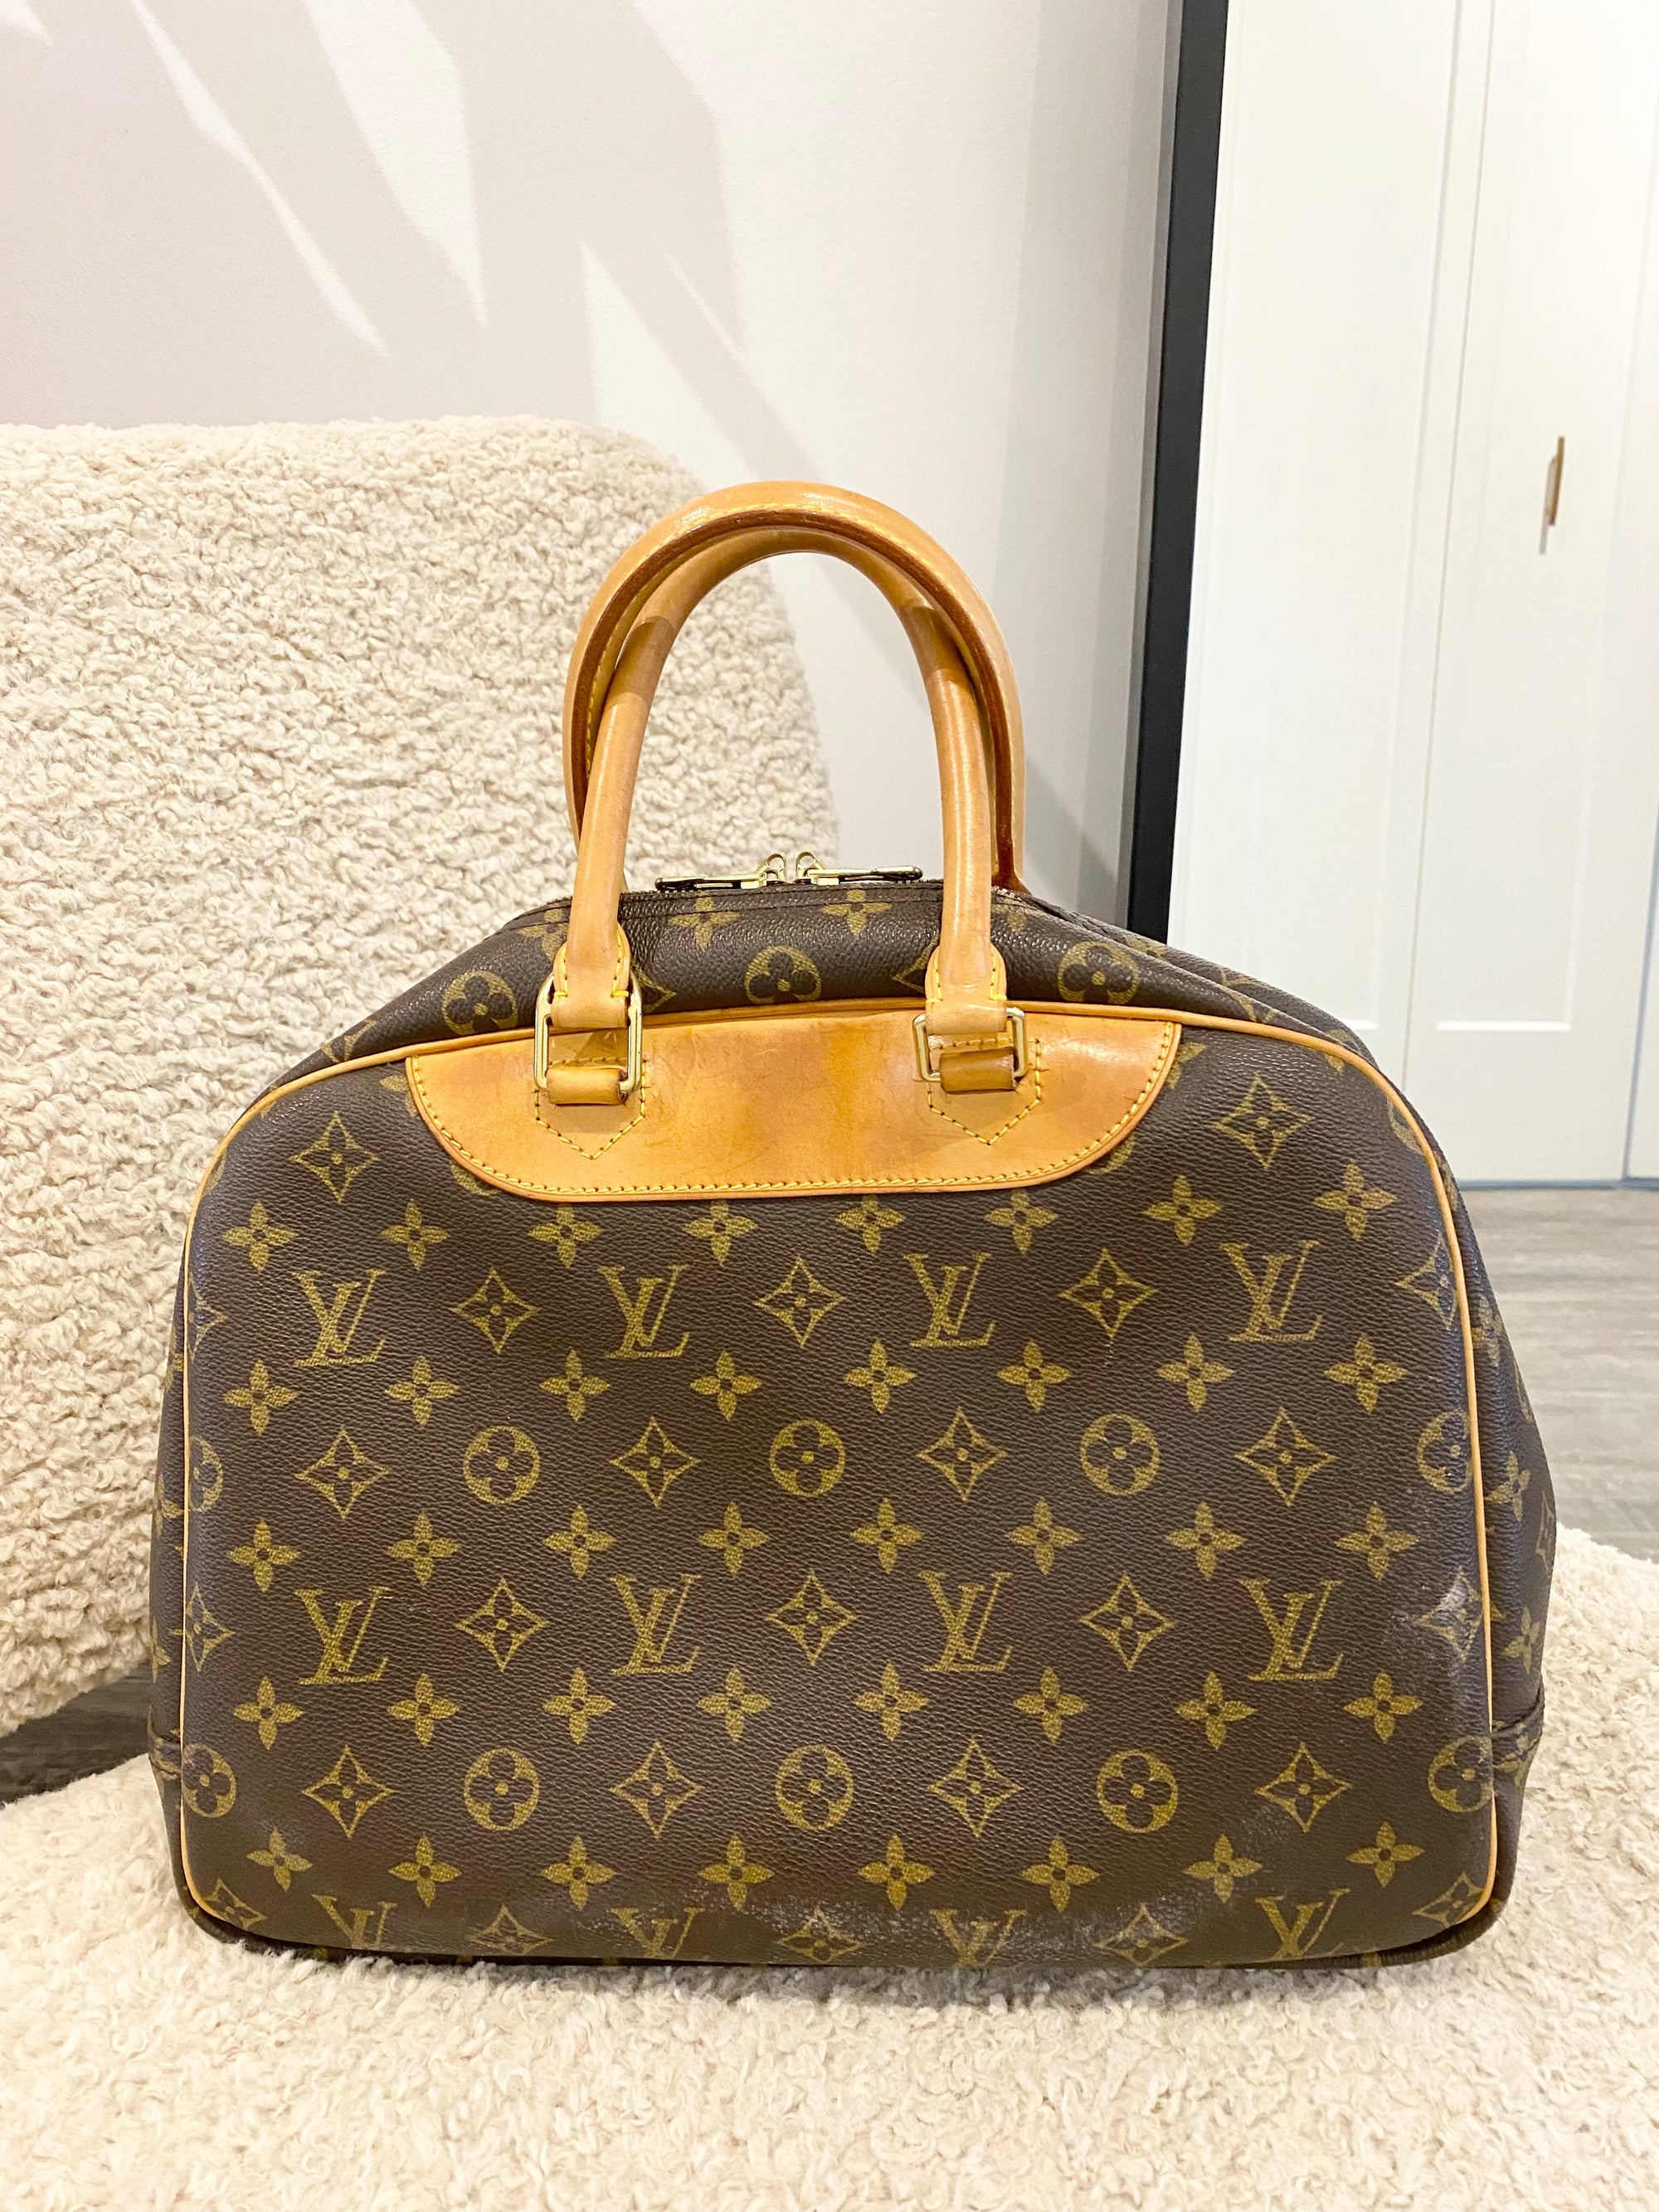 Louis Vuitton Deauville Handbag circa 1999